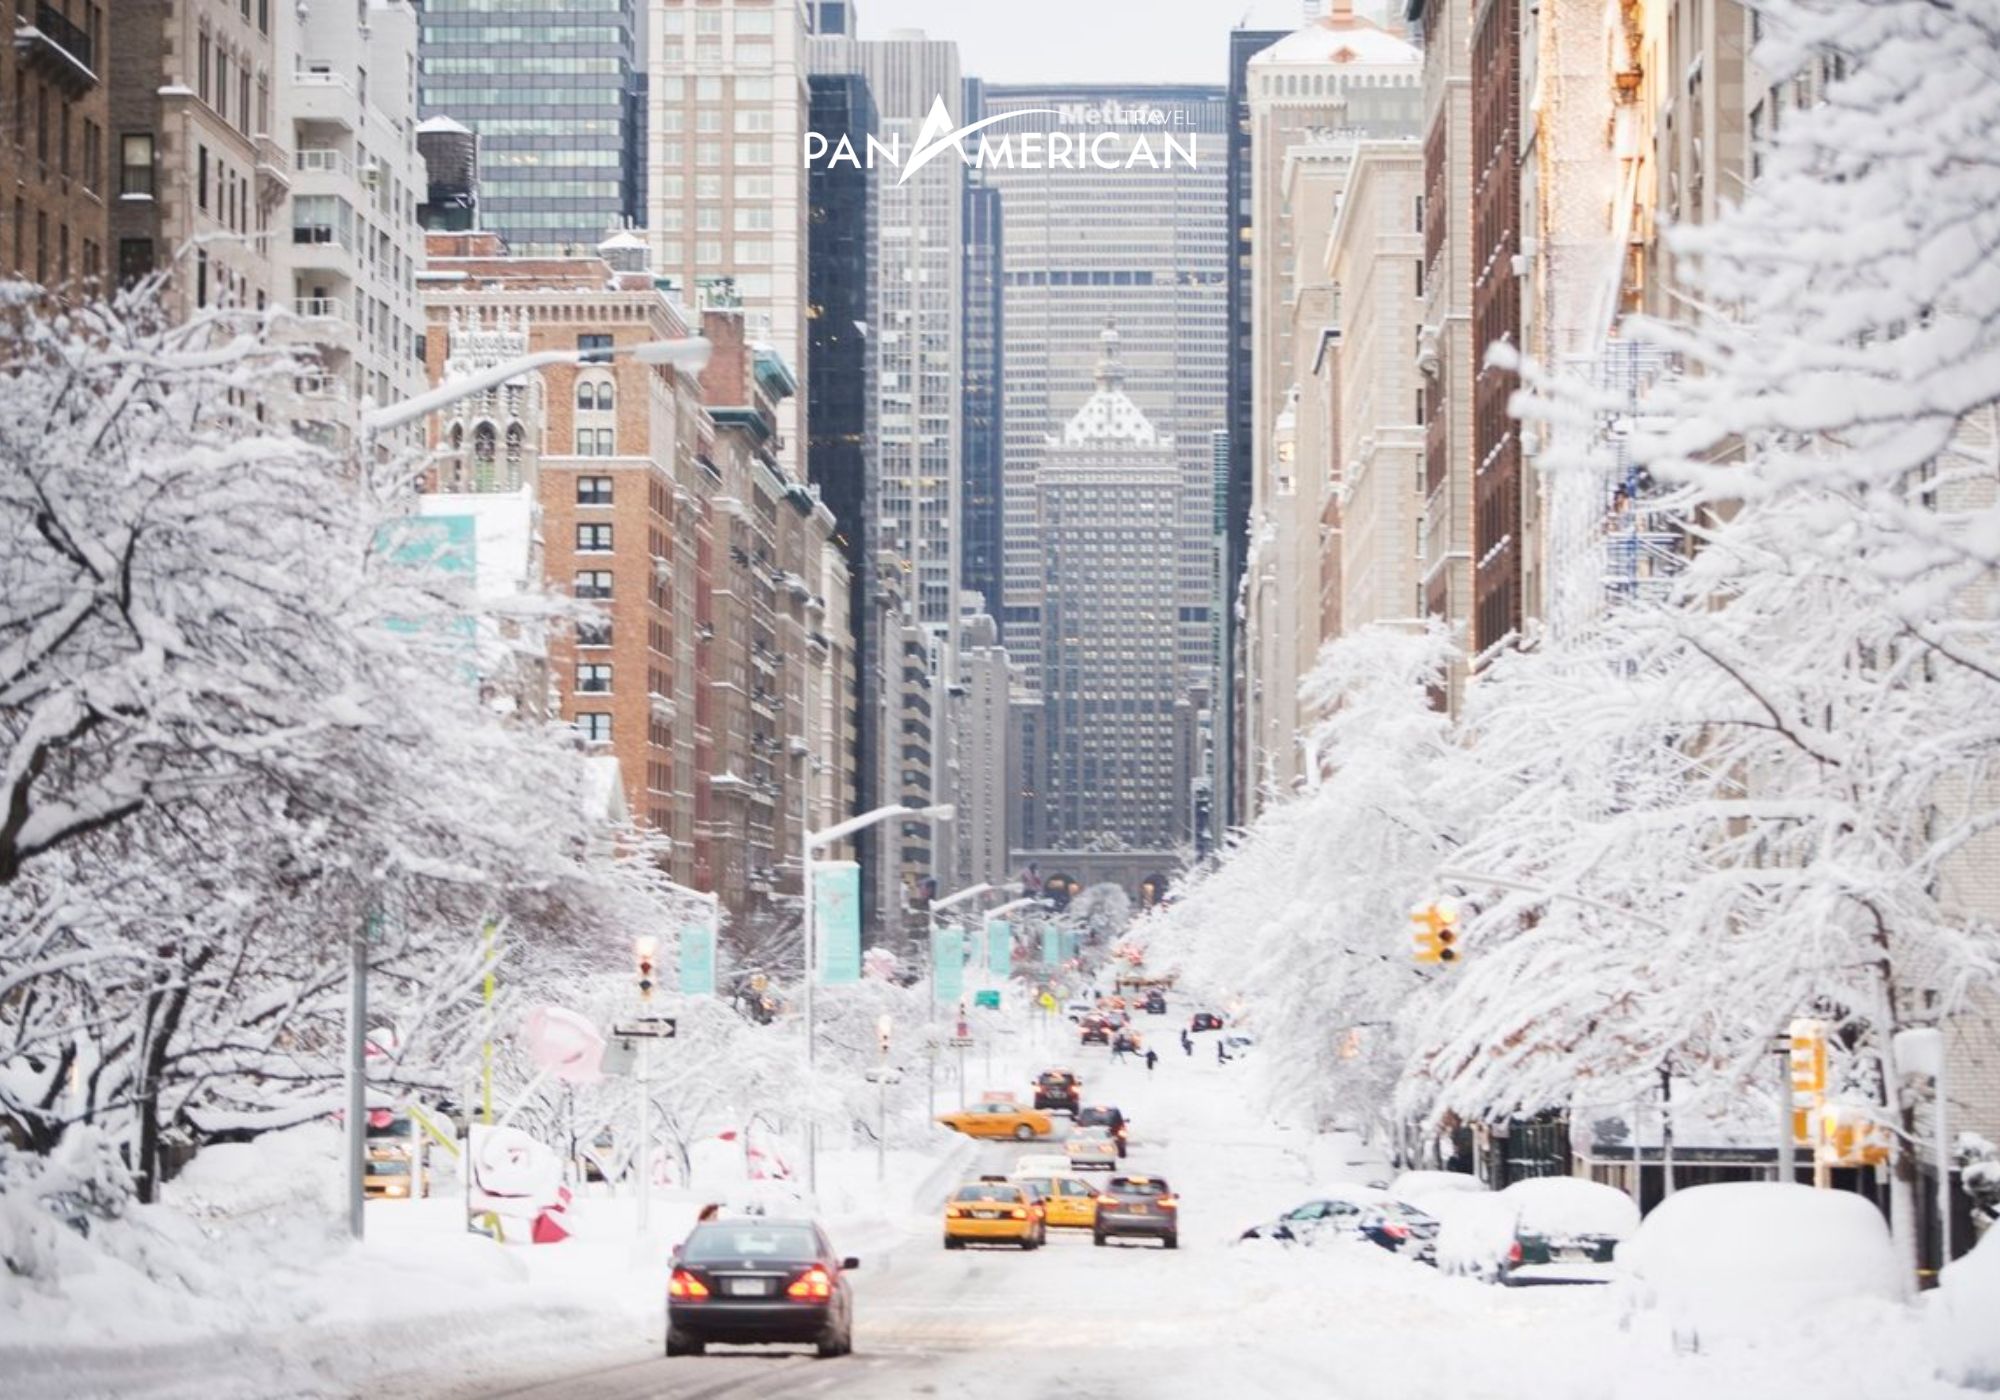 Mùa đông tại Mỹ, tuyết phủ trắng xóa mọi nẻo đường